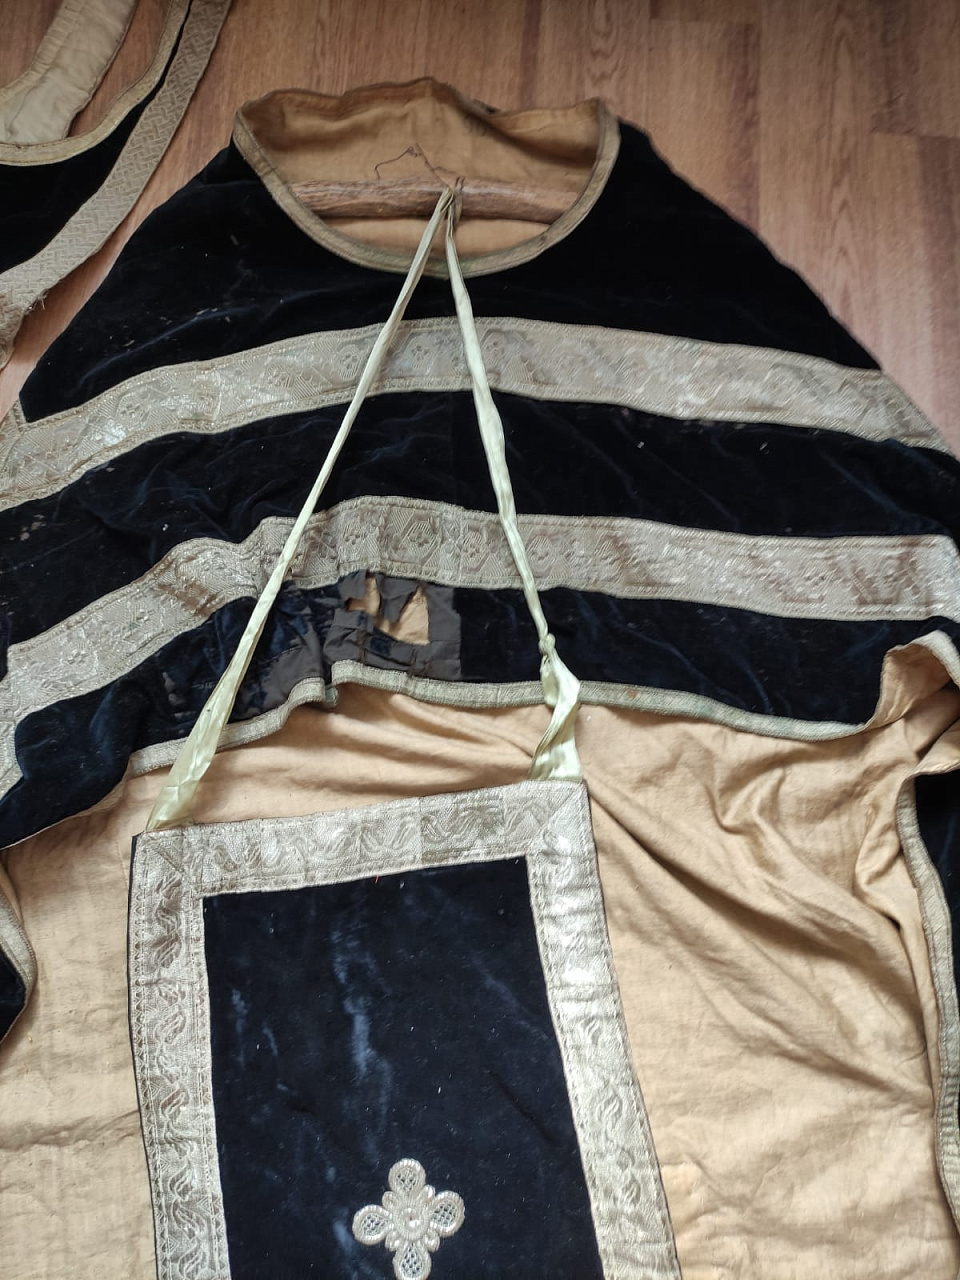 облачение священника, риза, епитрахиль, фелонь, 19 век  фото 4